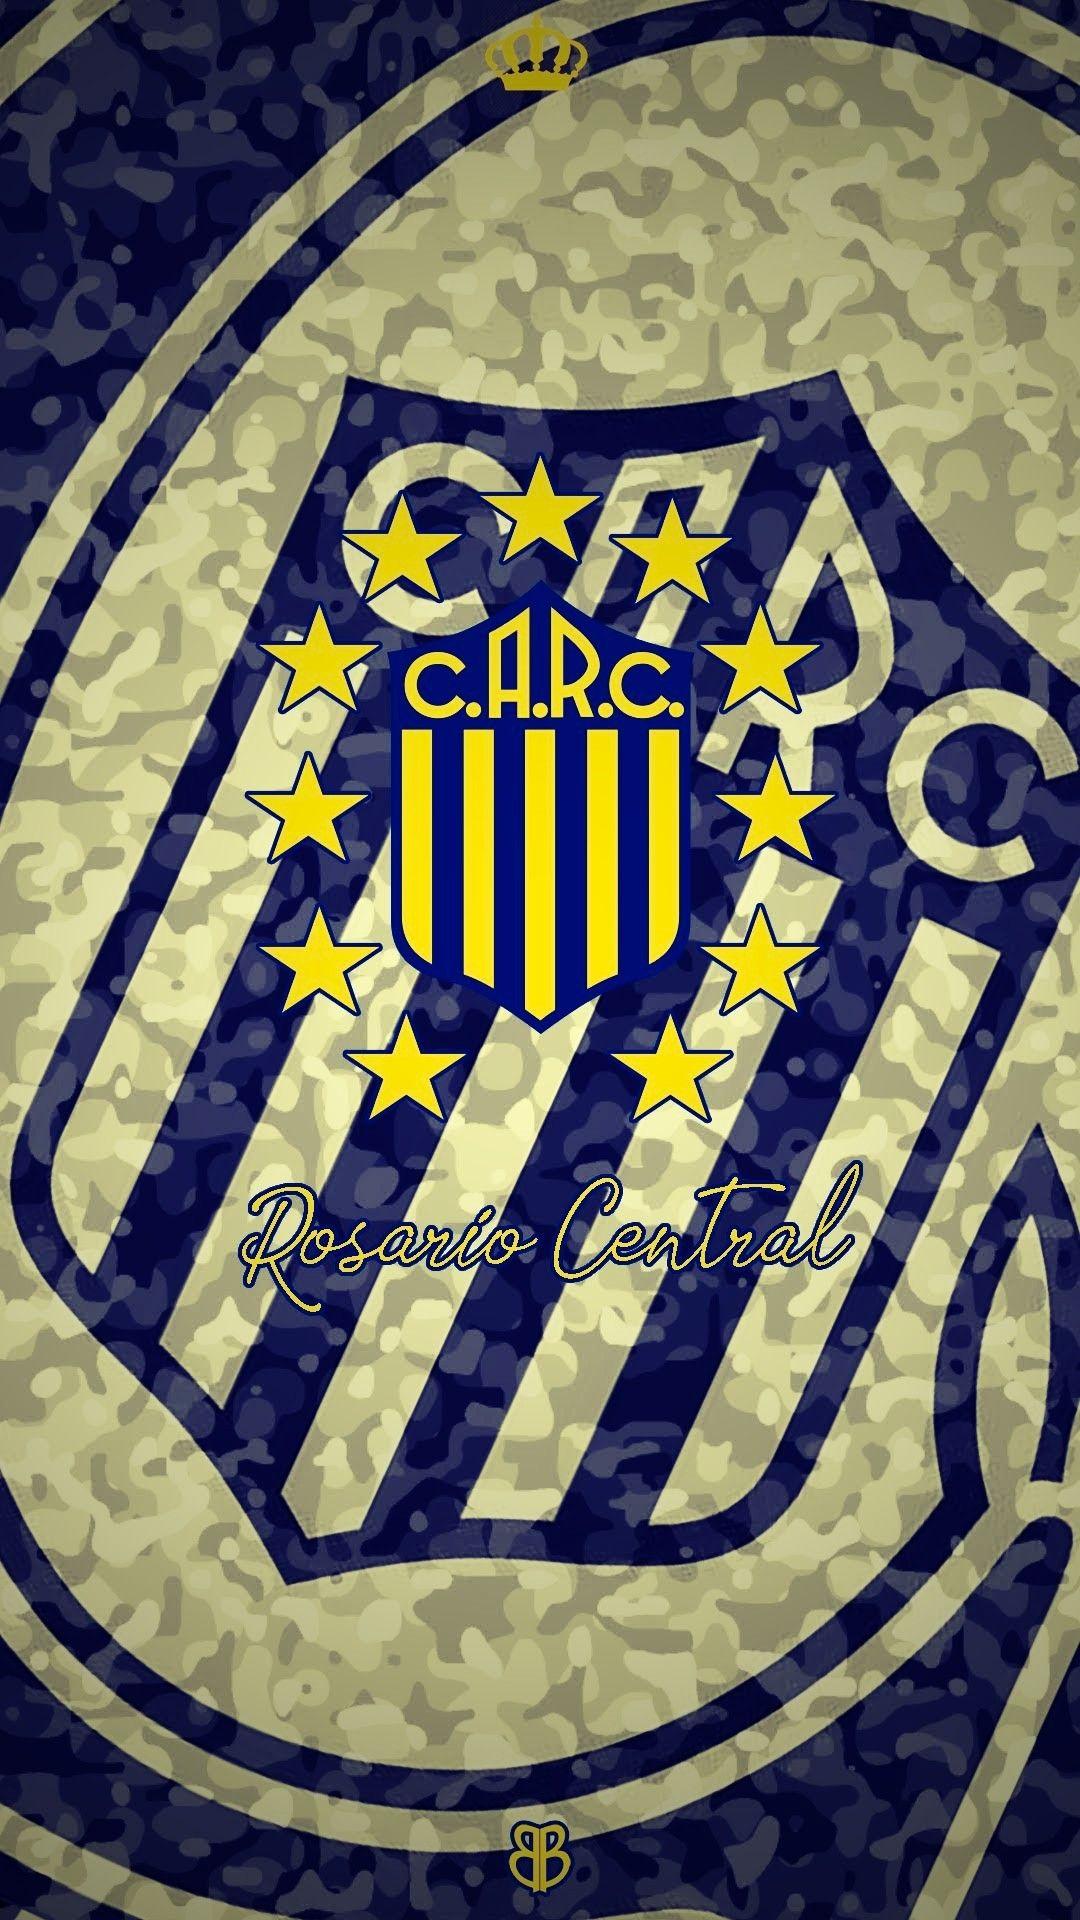 Club Atlético Rosario Central. Football badges. Rosario, Futbol